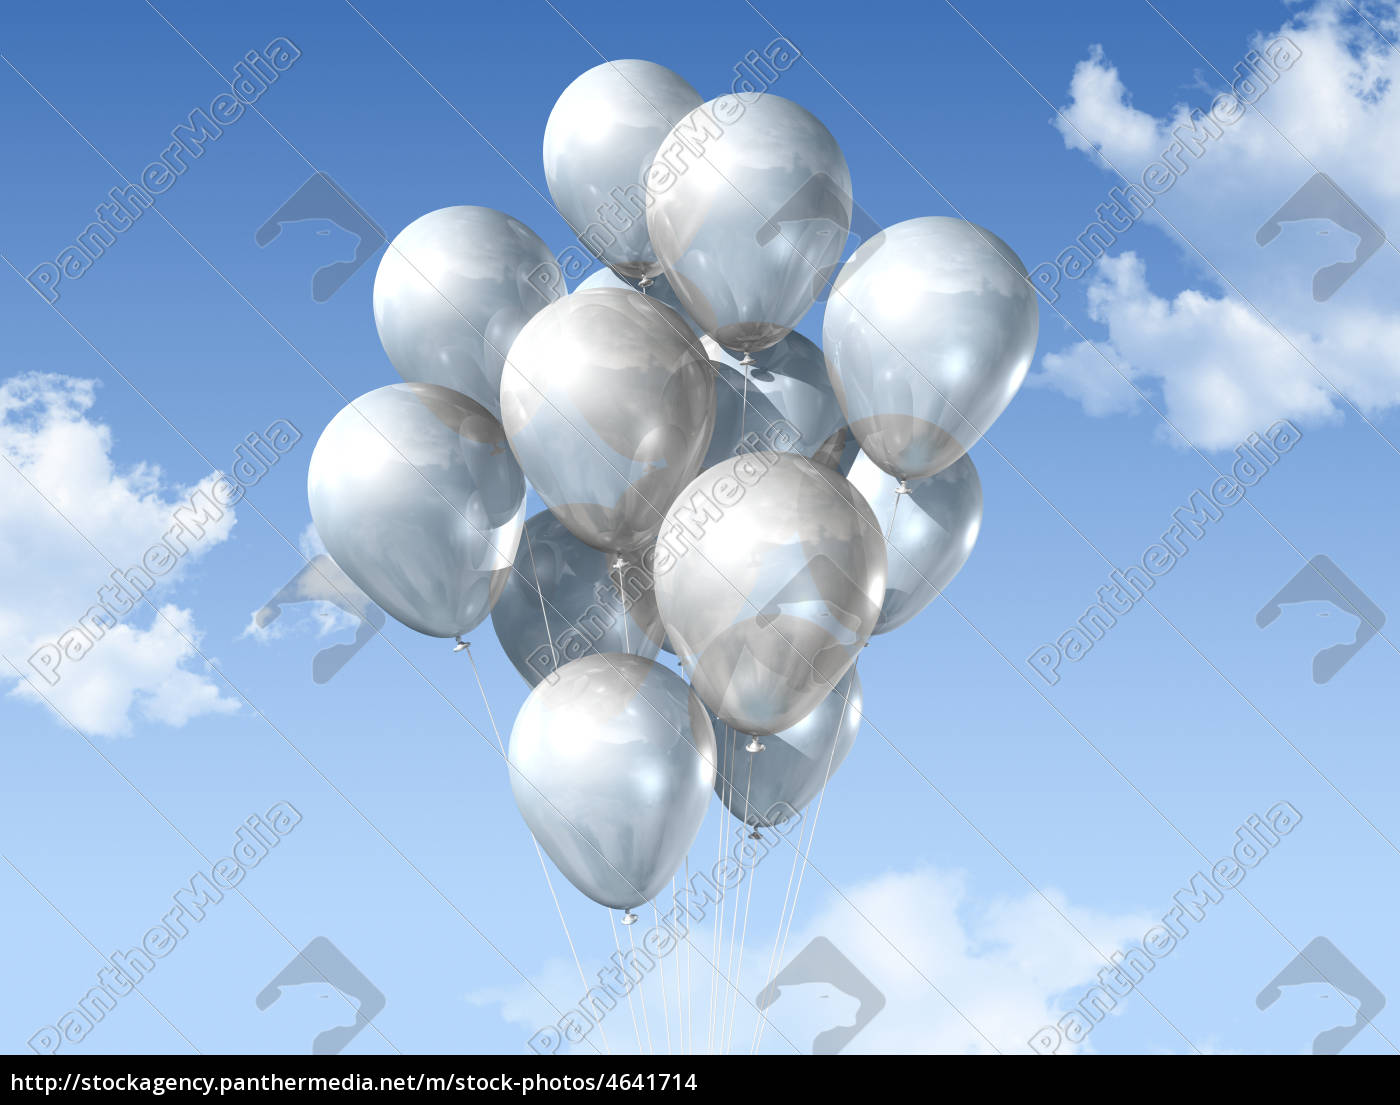 globos blancos en un cielo azul - Stockphoto #4641714